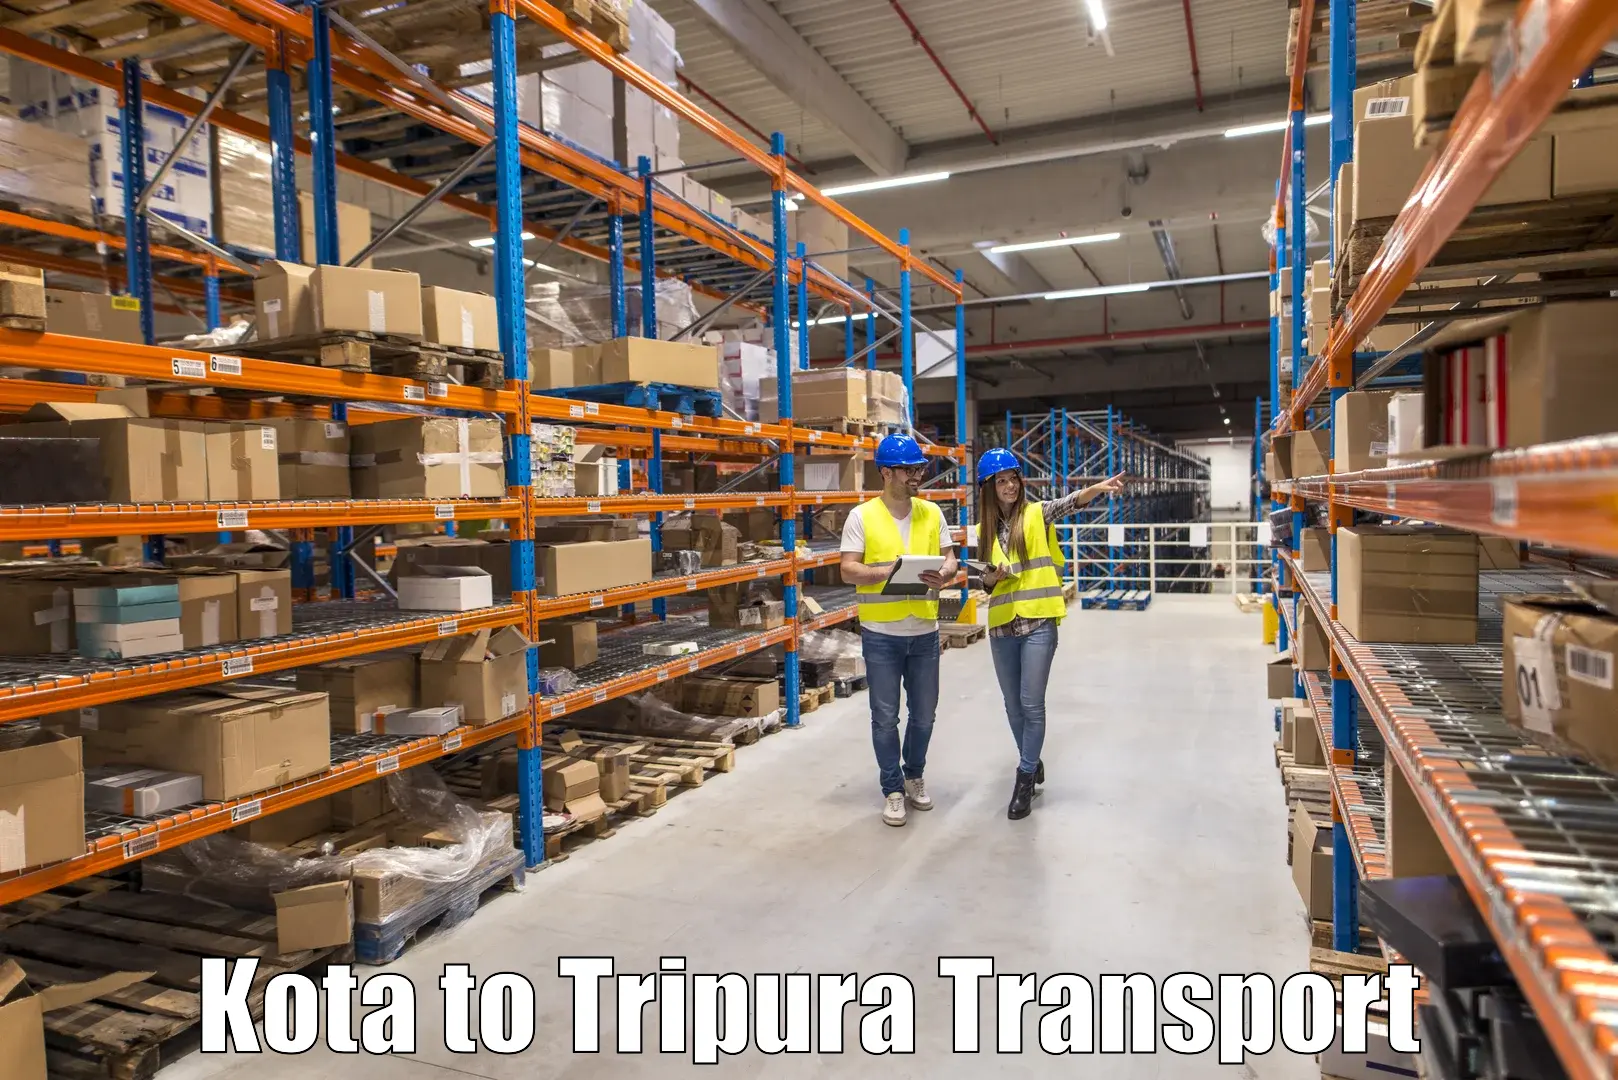 Inland transportation services Kota to IIIT Agartala